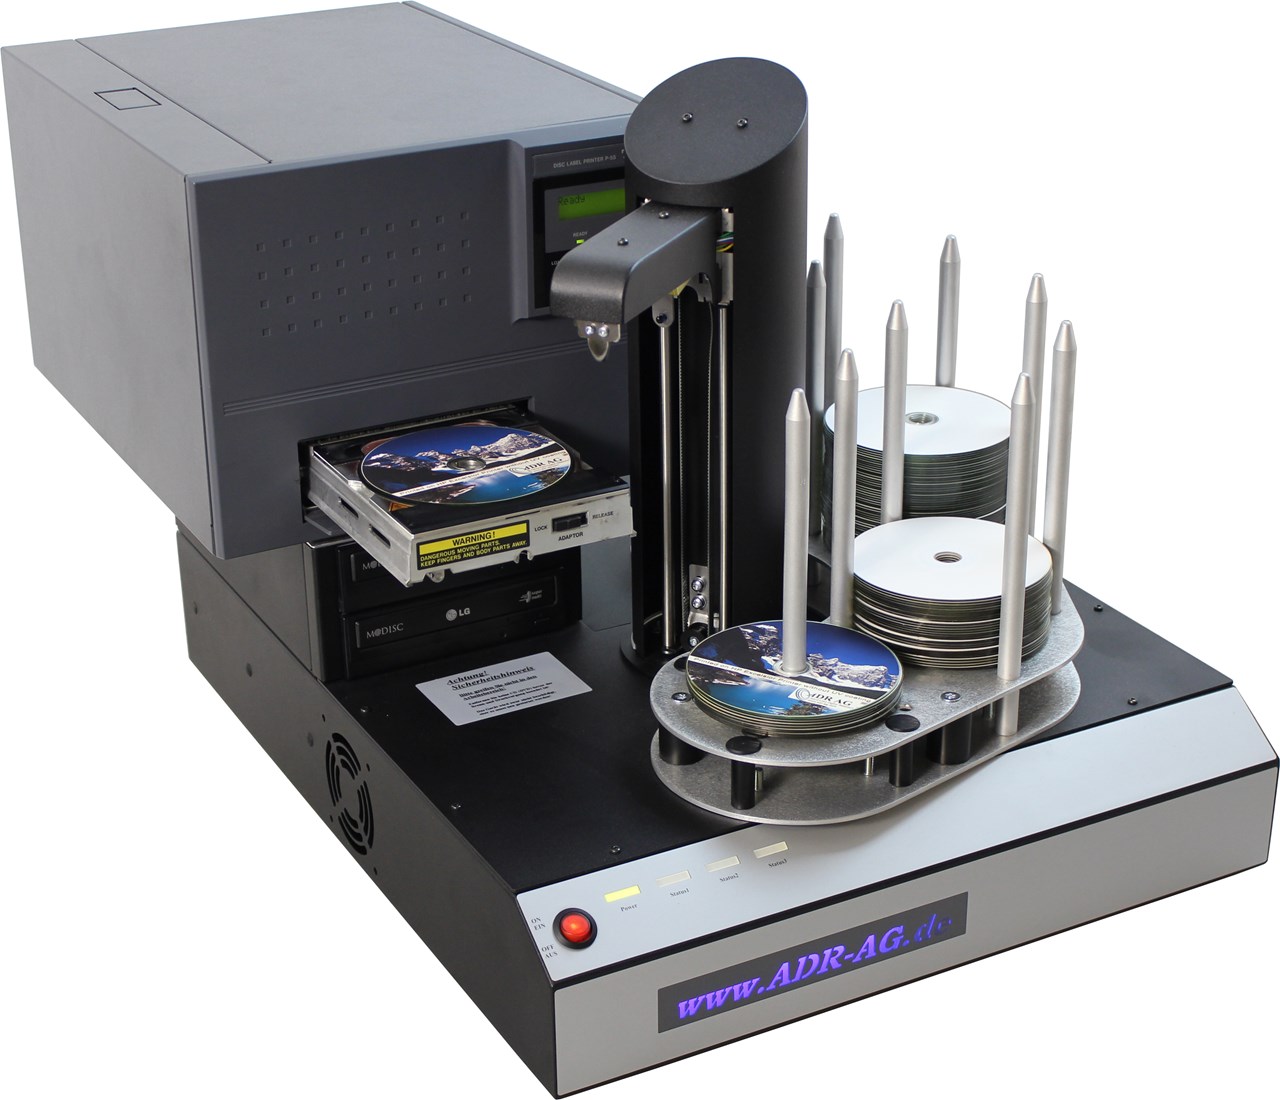 Imagem de Hurricane 1 Duplicador de CD/DVD com impressora de termoretransferência TEAC p-55